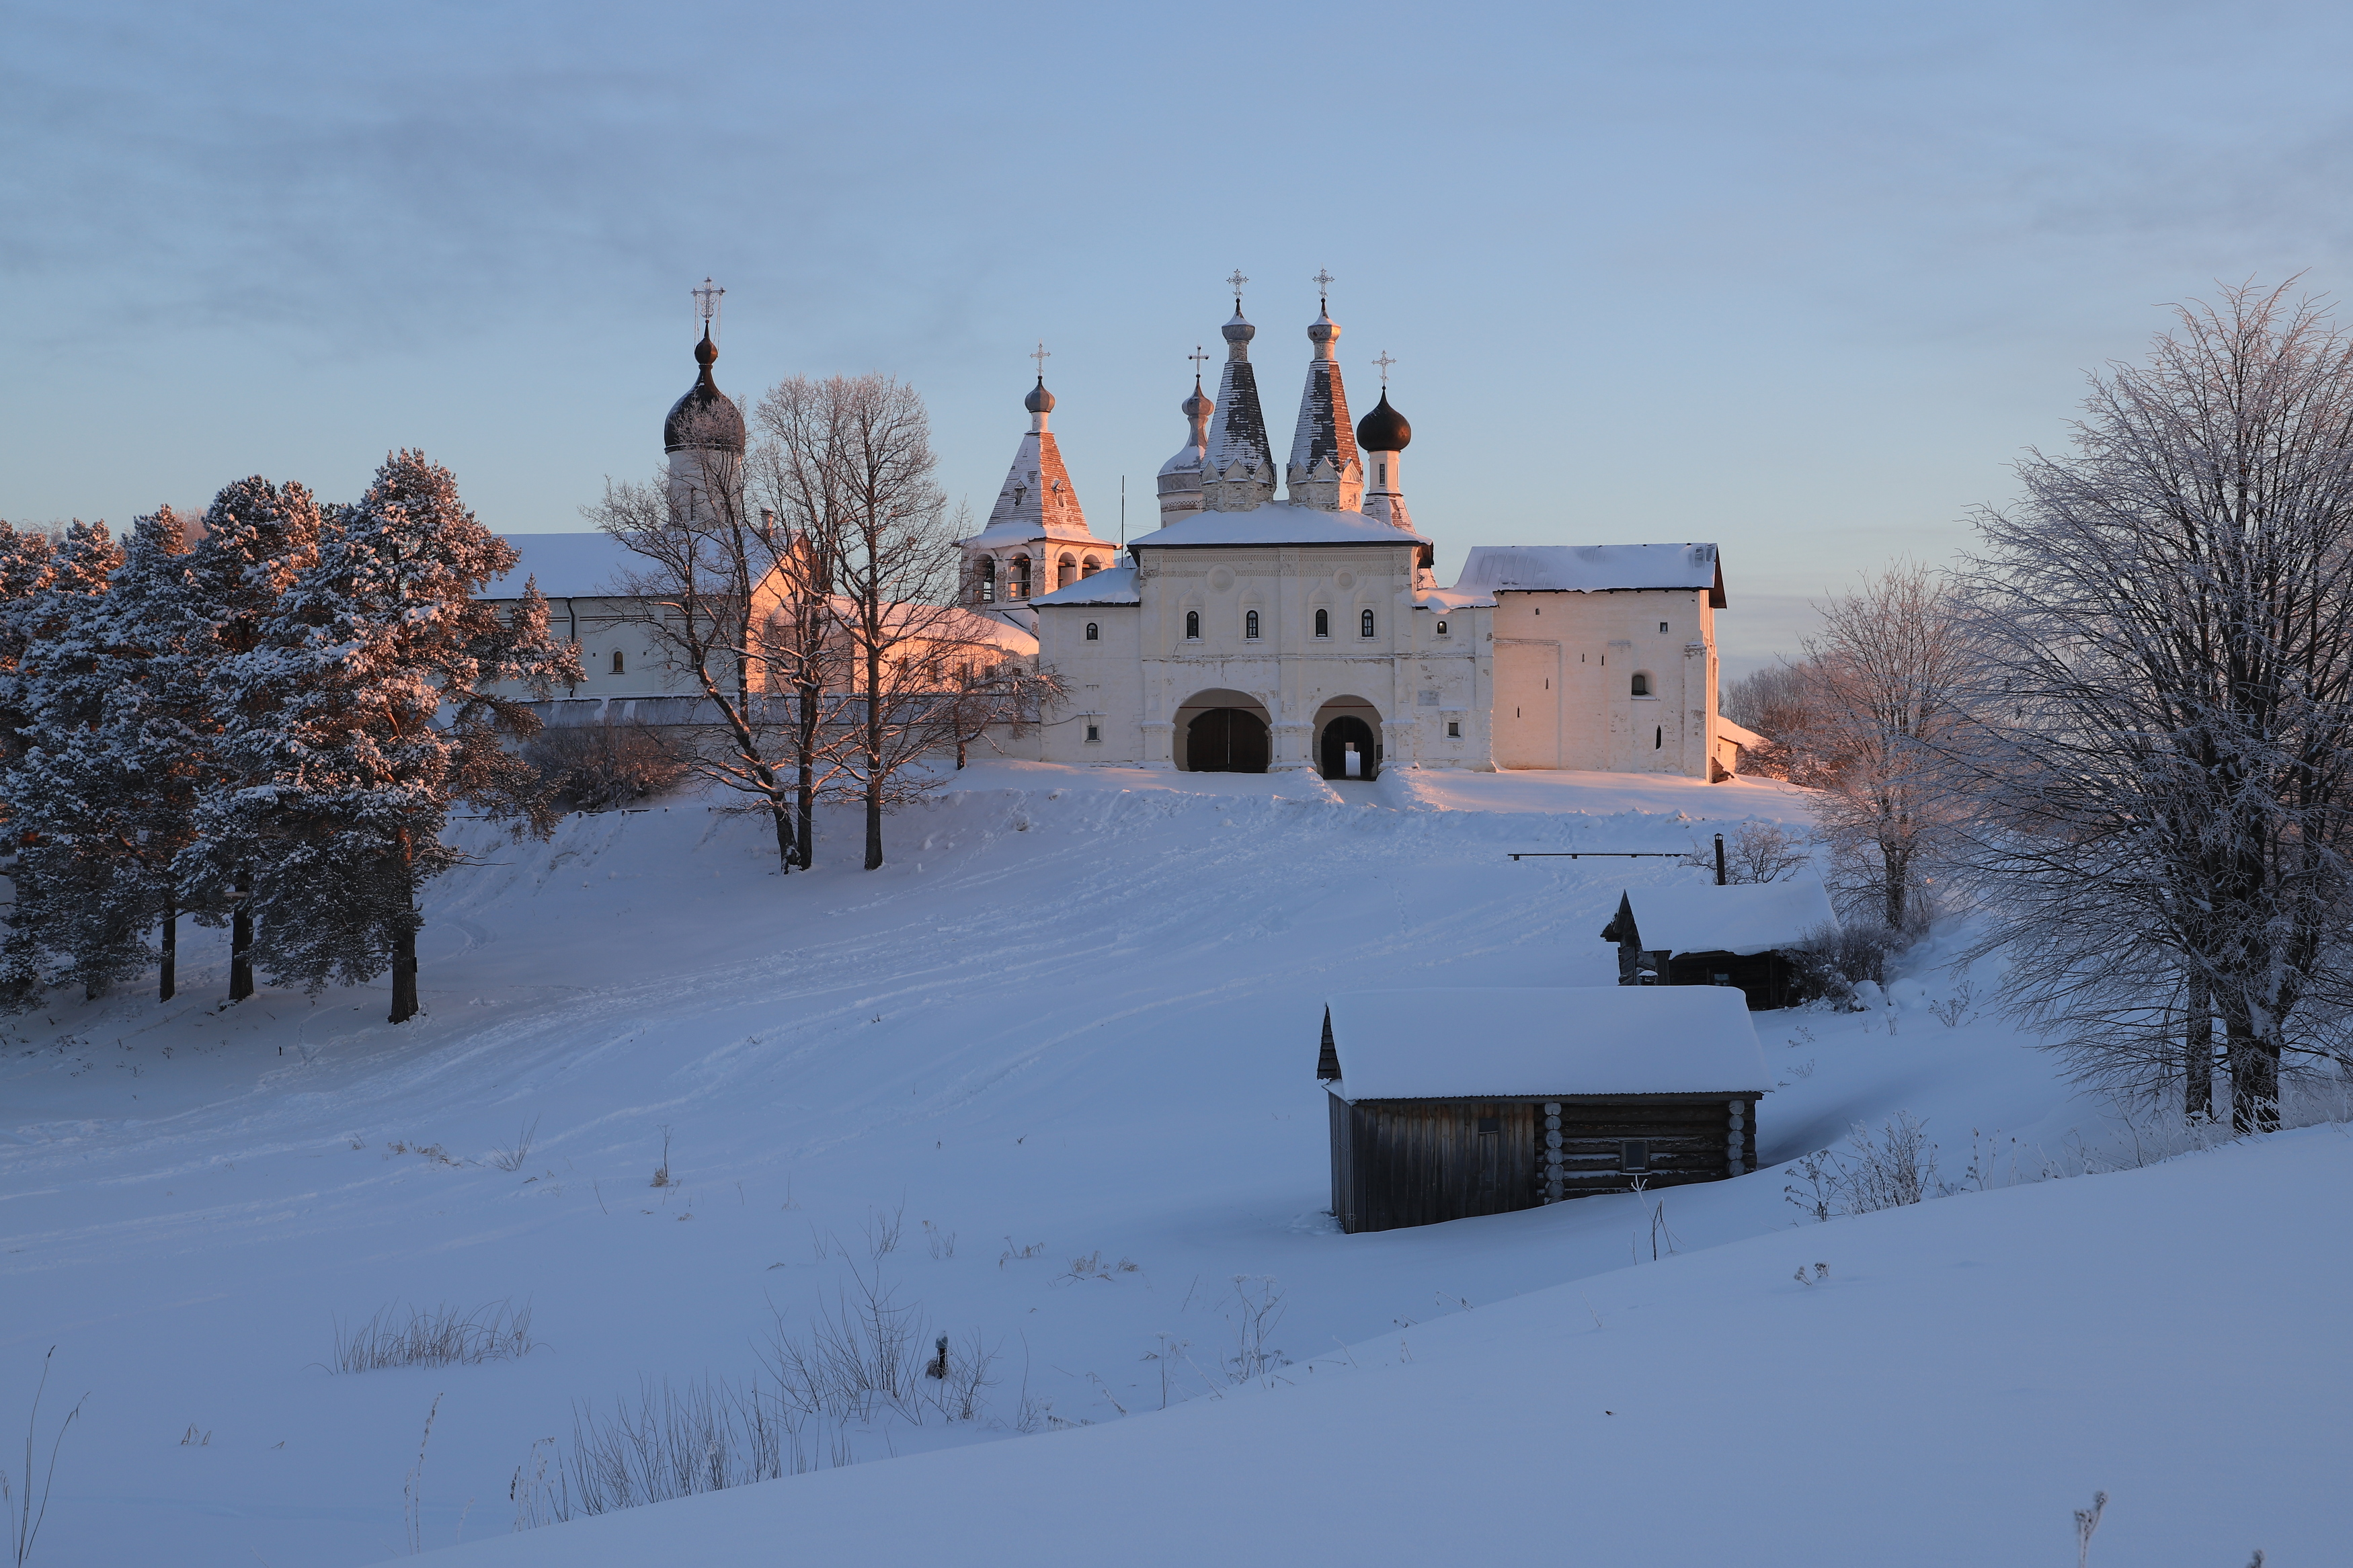 вологда ферапонтов монастырь зима утро рассвет пейзаж красное солнце лучи склон снег мороз тень, Irina Solonina